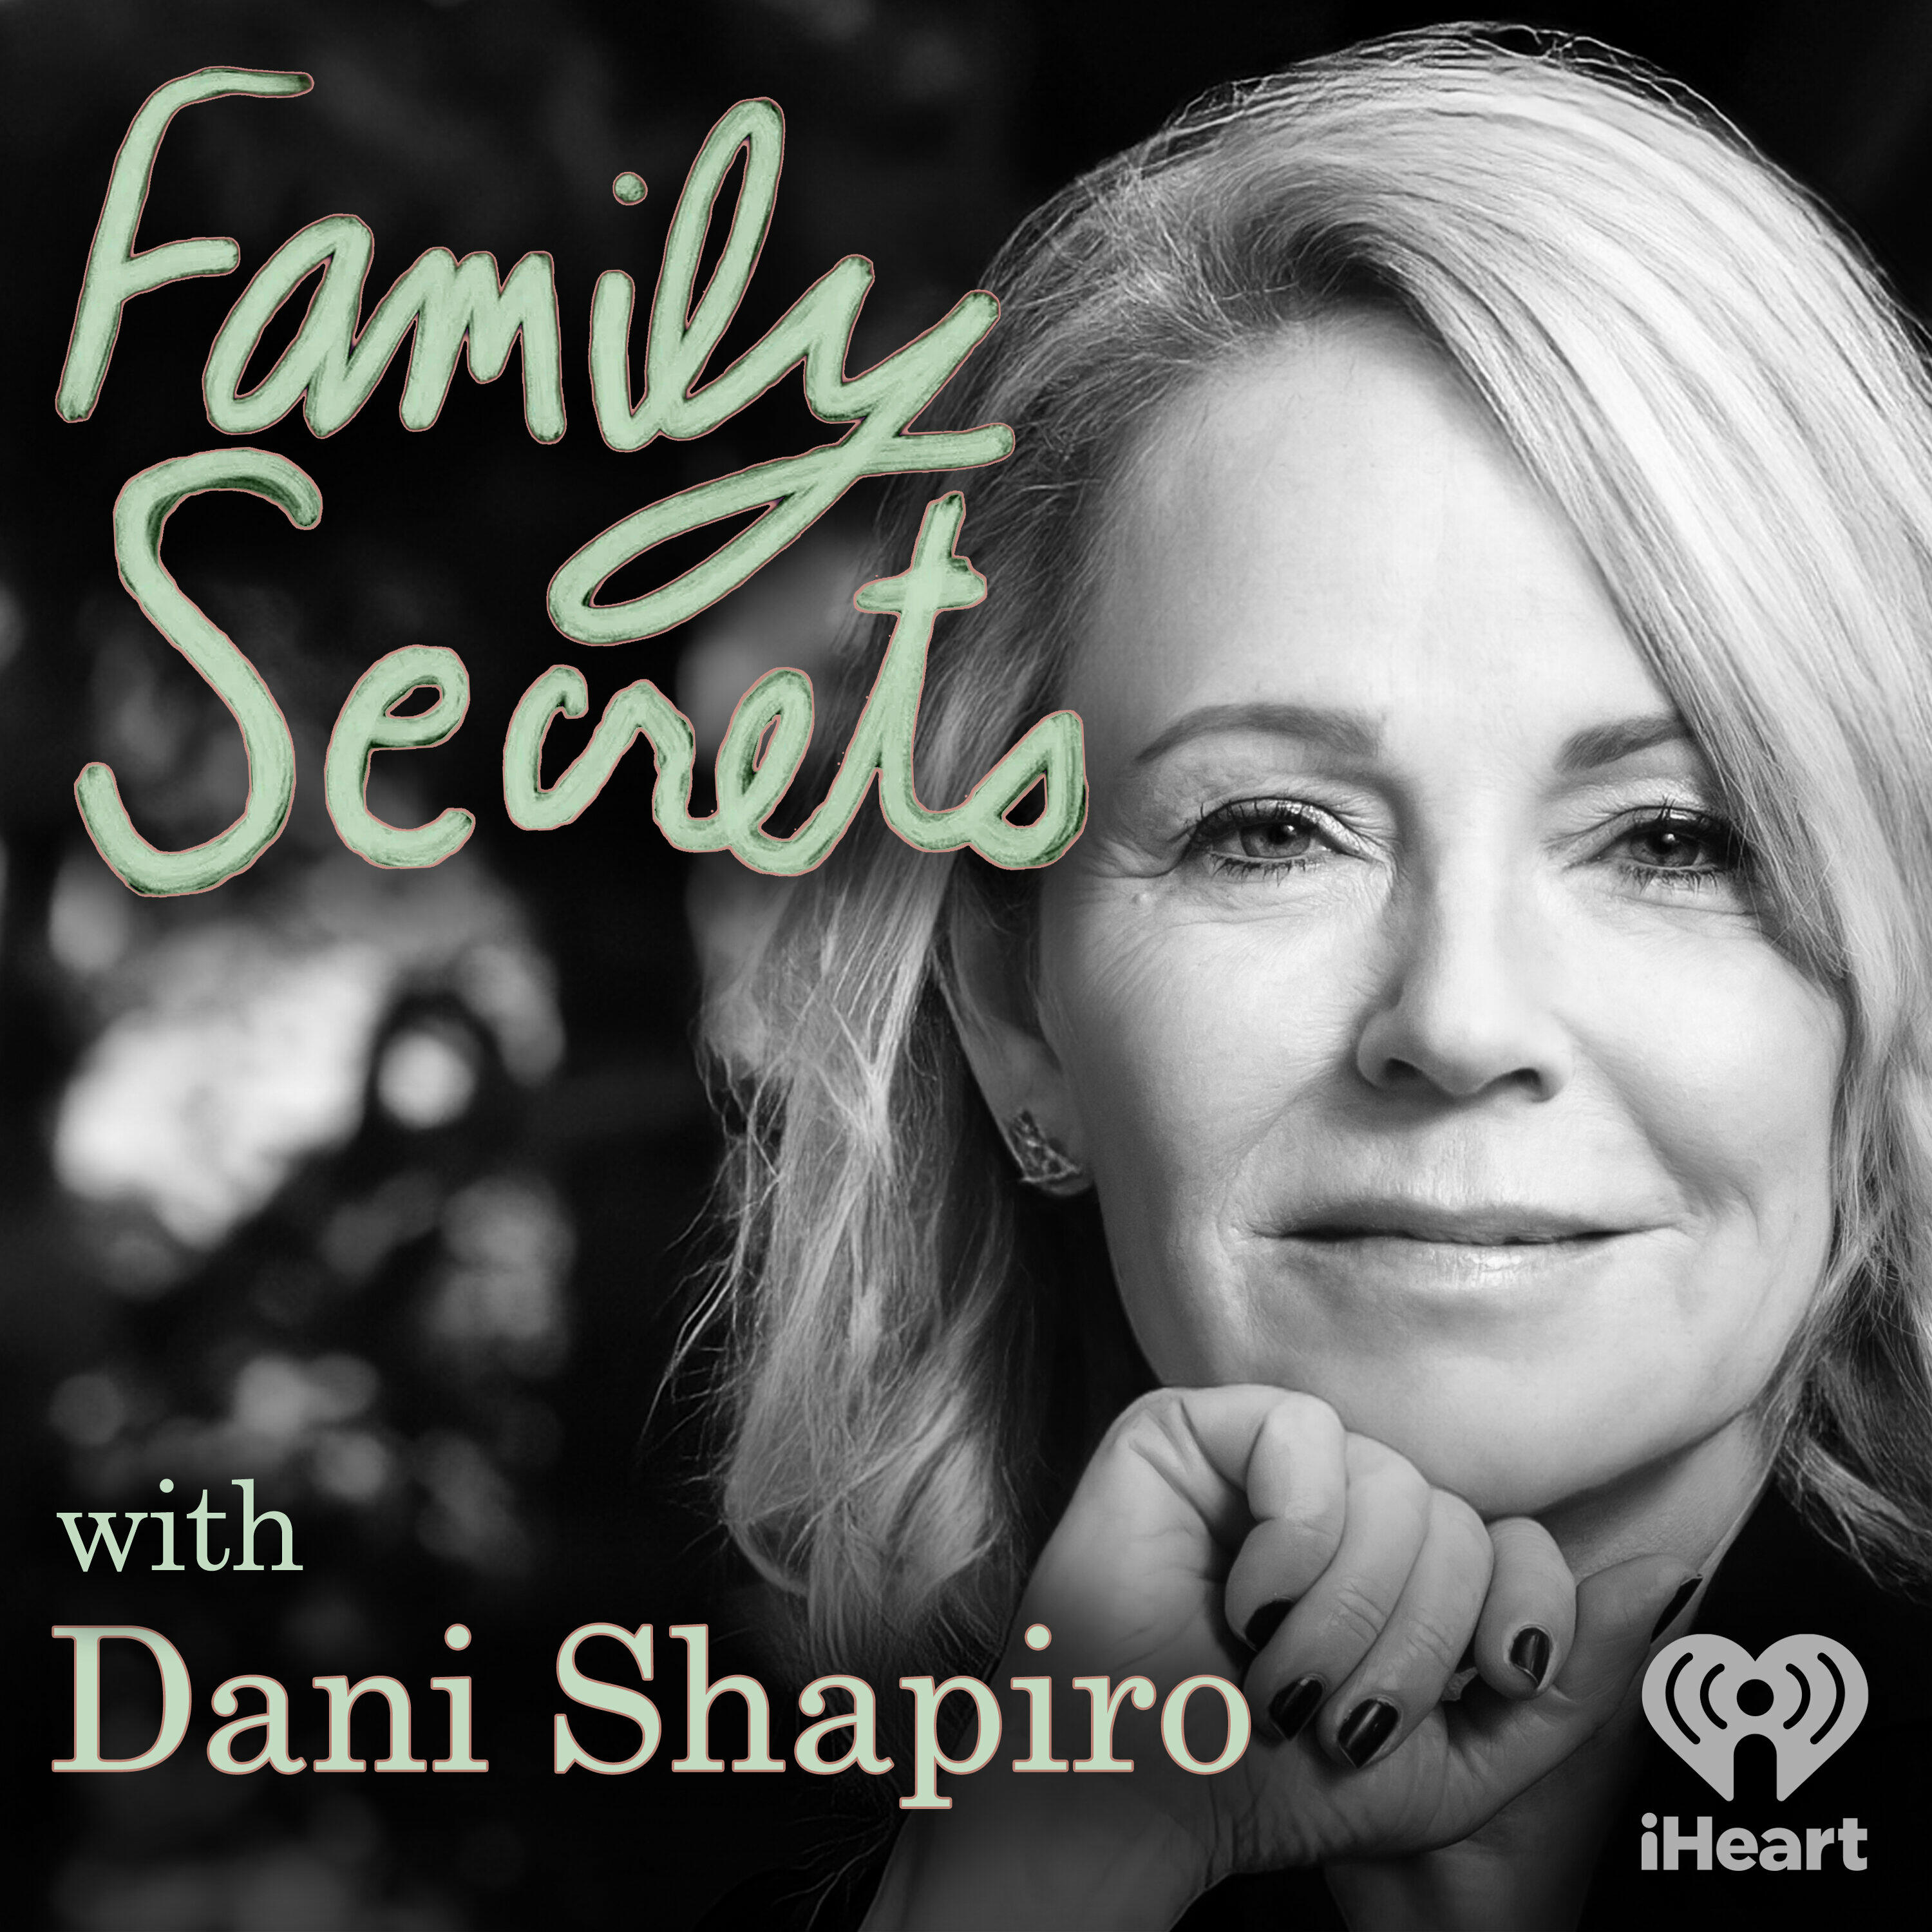 The secret life of secrets - ABC listen